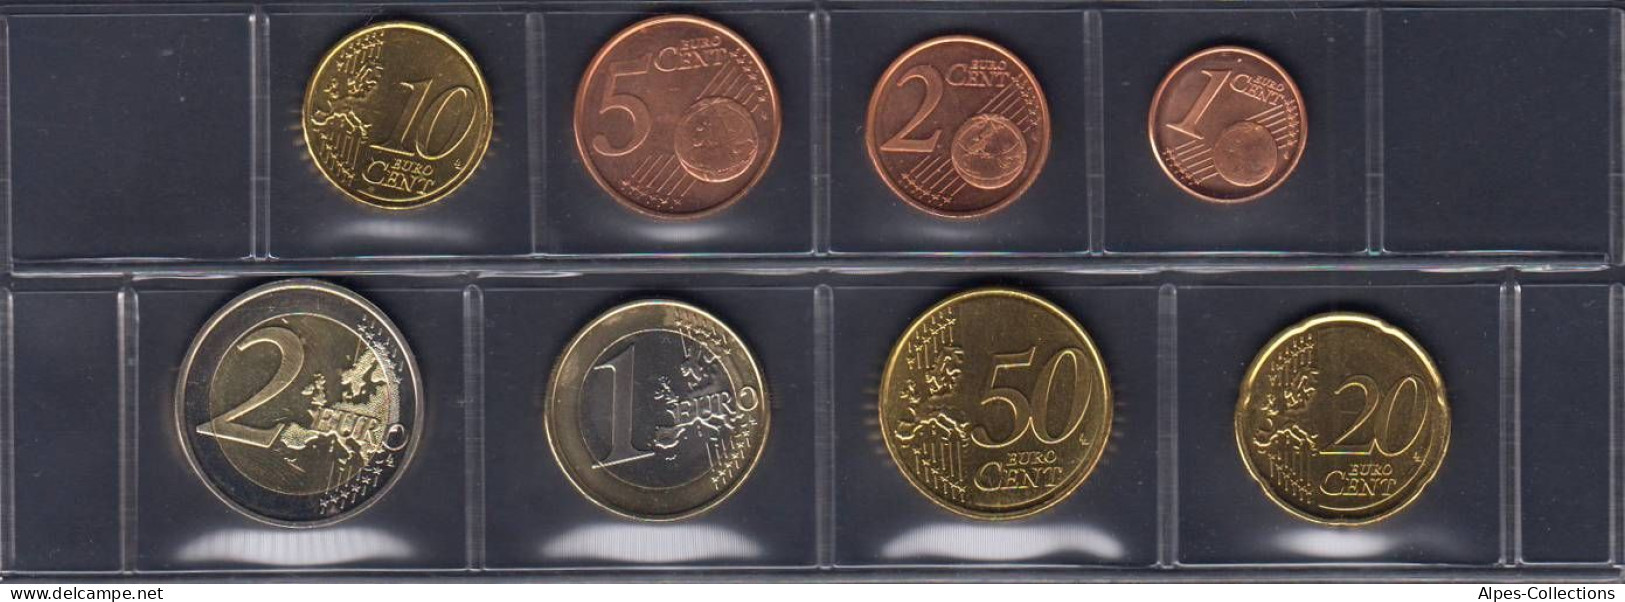 FIX2009.3 - SERIE FINLANDE - 2009 - 1 Cent à 2 Euros - Finlandia